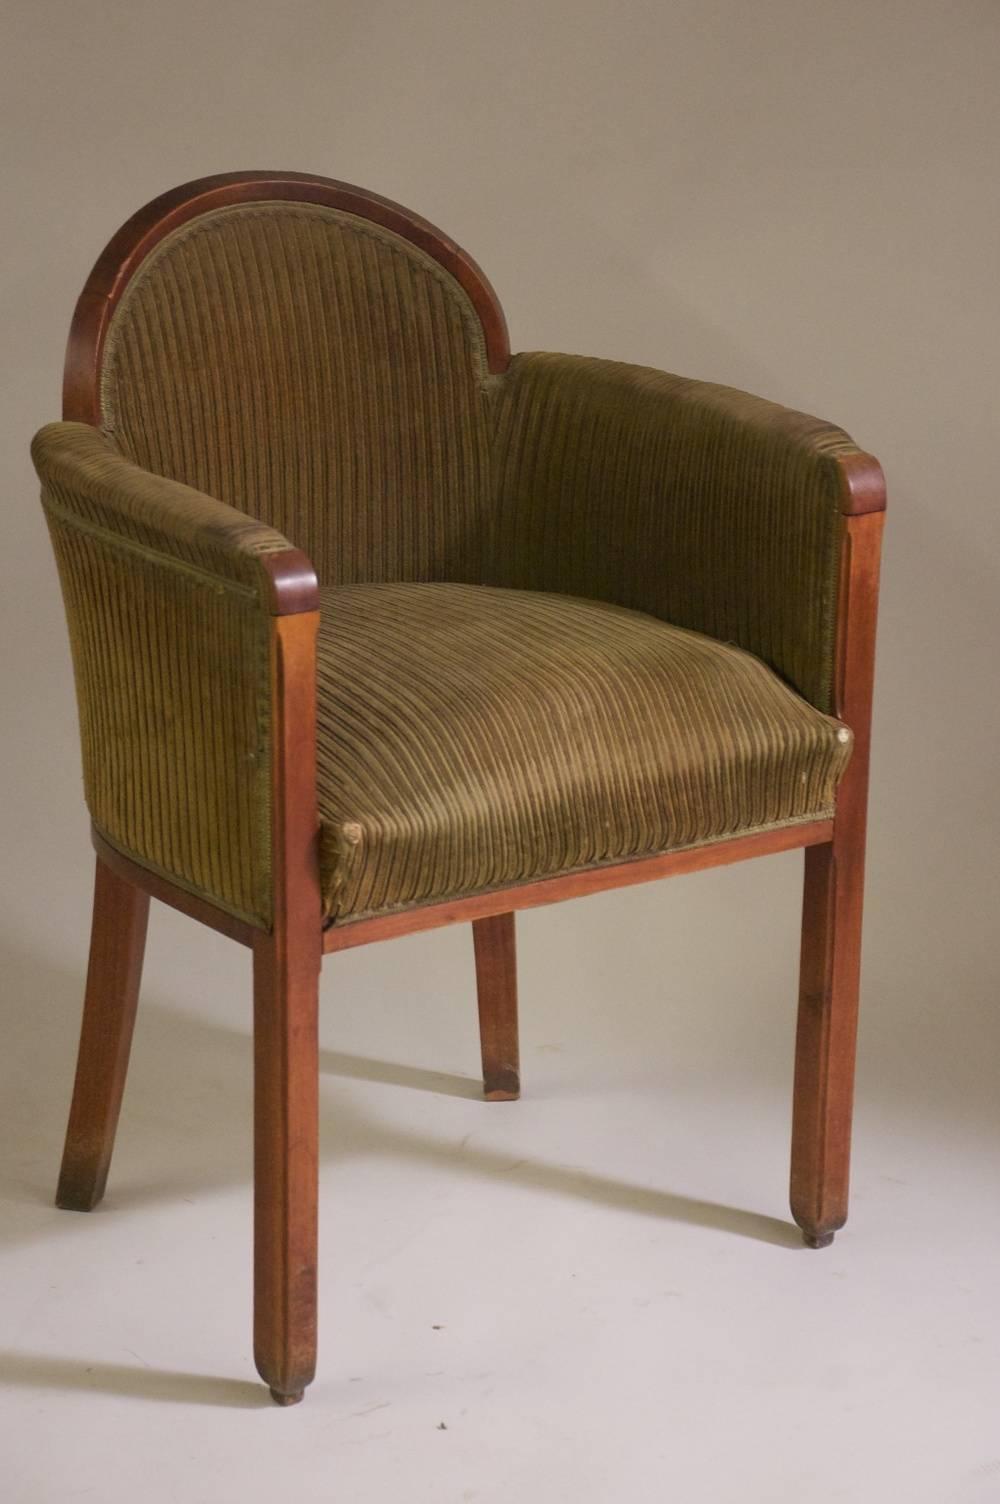 Klassische französische Art-Déco-Sessel mit niedriger Rückenlehne. Zwei Paare von Paul Follot um 1927 aus geschnitztem Mahagoniholz erhältlich. Dokumentiert.

Bitte beachten Sie, dass diese Stühle auf den Fotos unrestauriert sind.

Der Preis